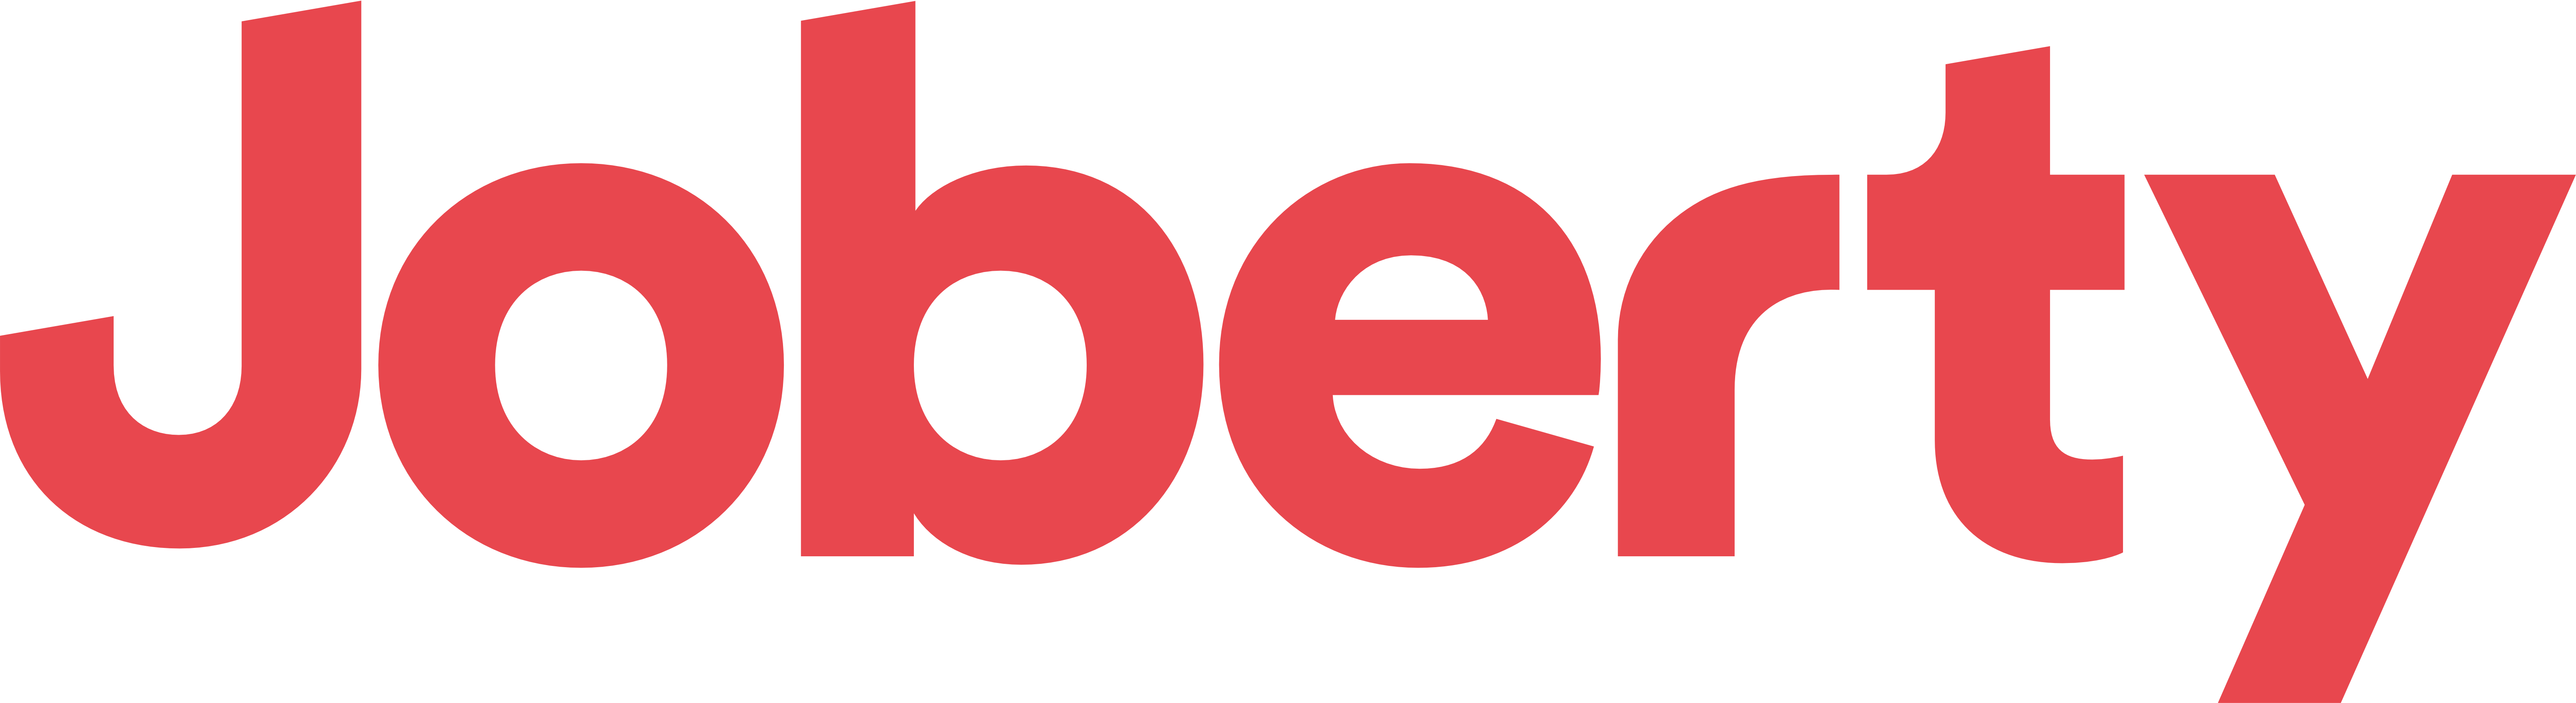 joberty logo